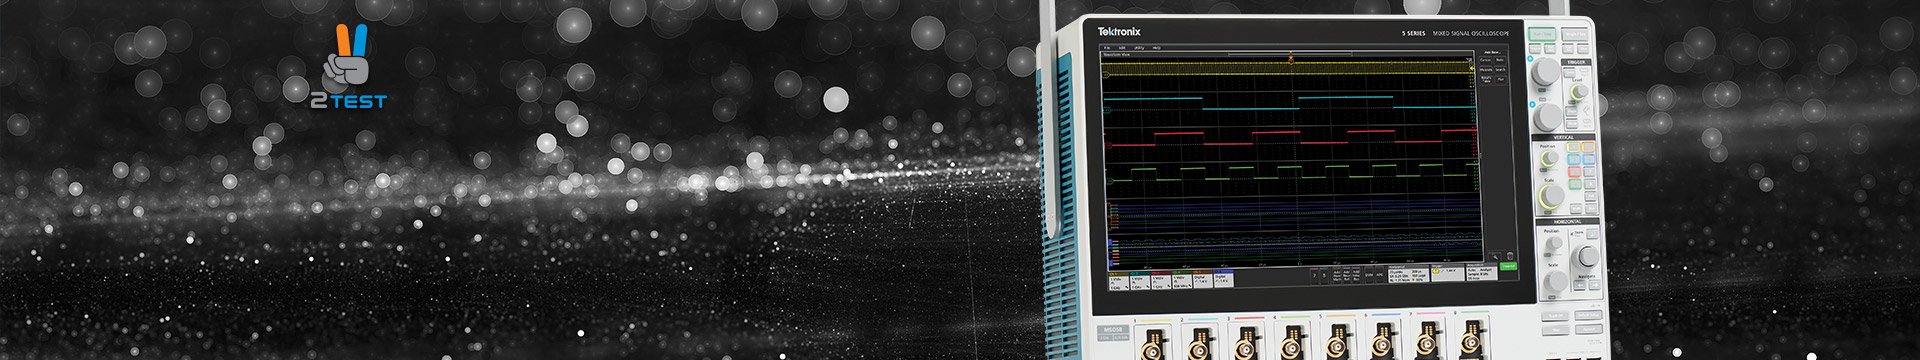 Встречайте Ваши новые возможности с уникальным осциллографом Tektronix MSO серии 5 — по выгодной цене в 2TEST